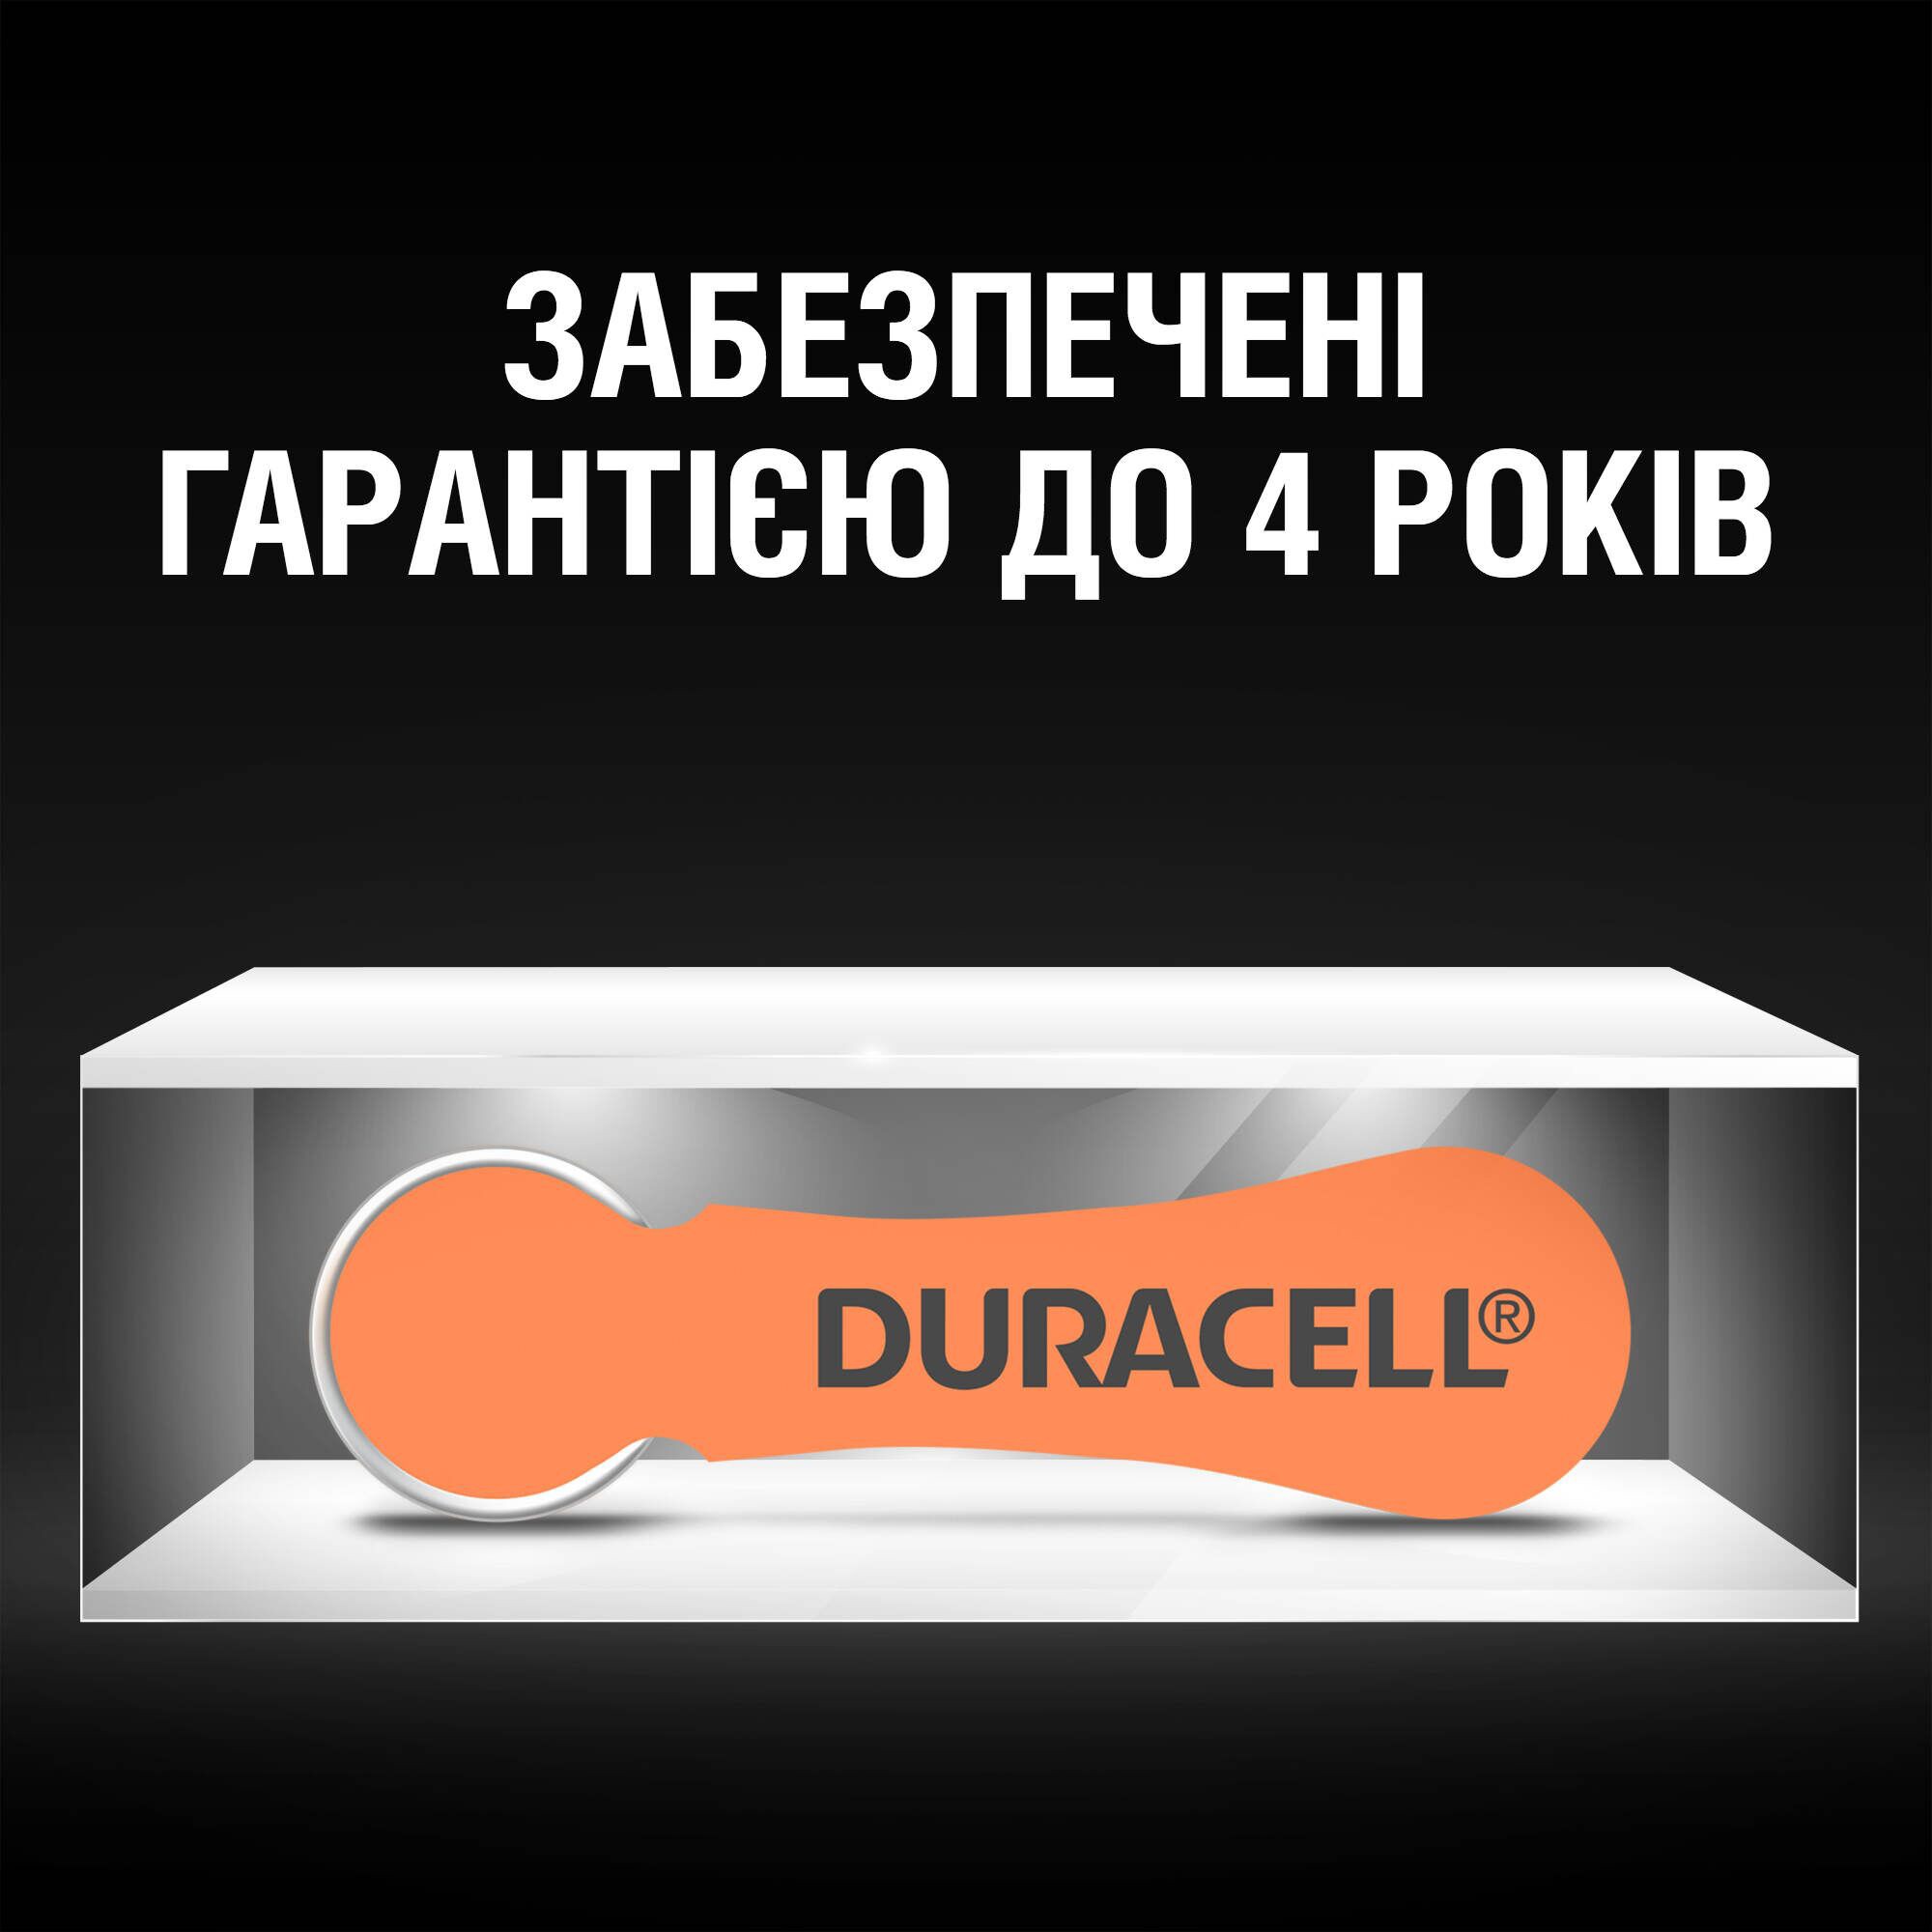 Батарейка Duracell Hearing Aid 13 6 шт. (5002989) обзор - фото 8